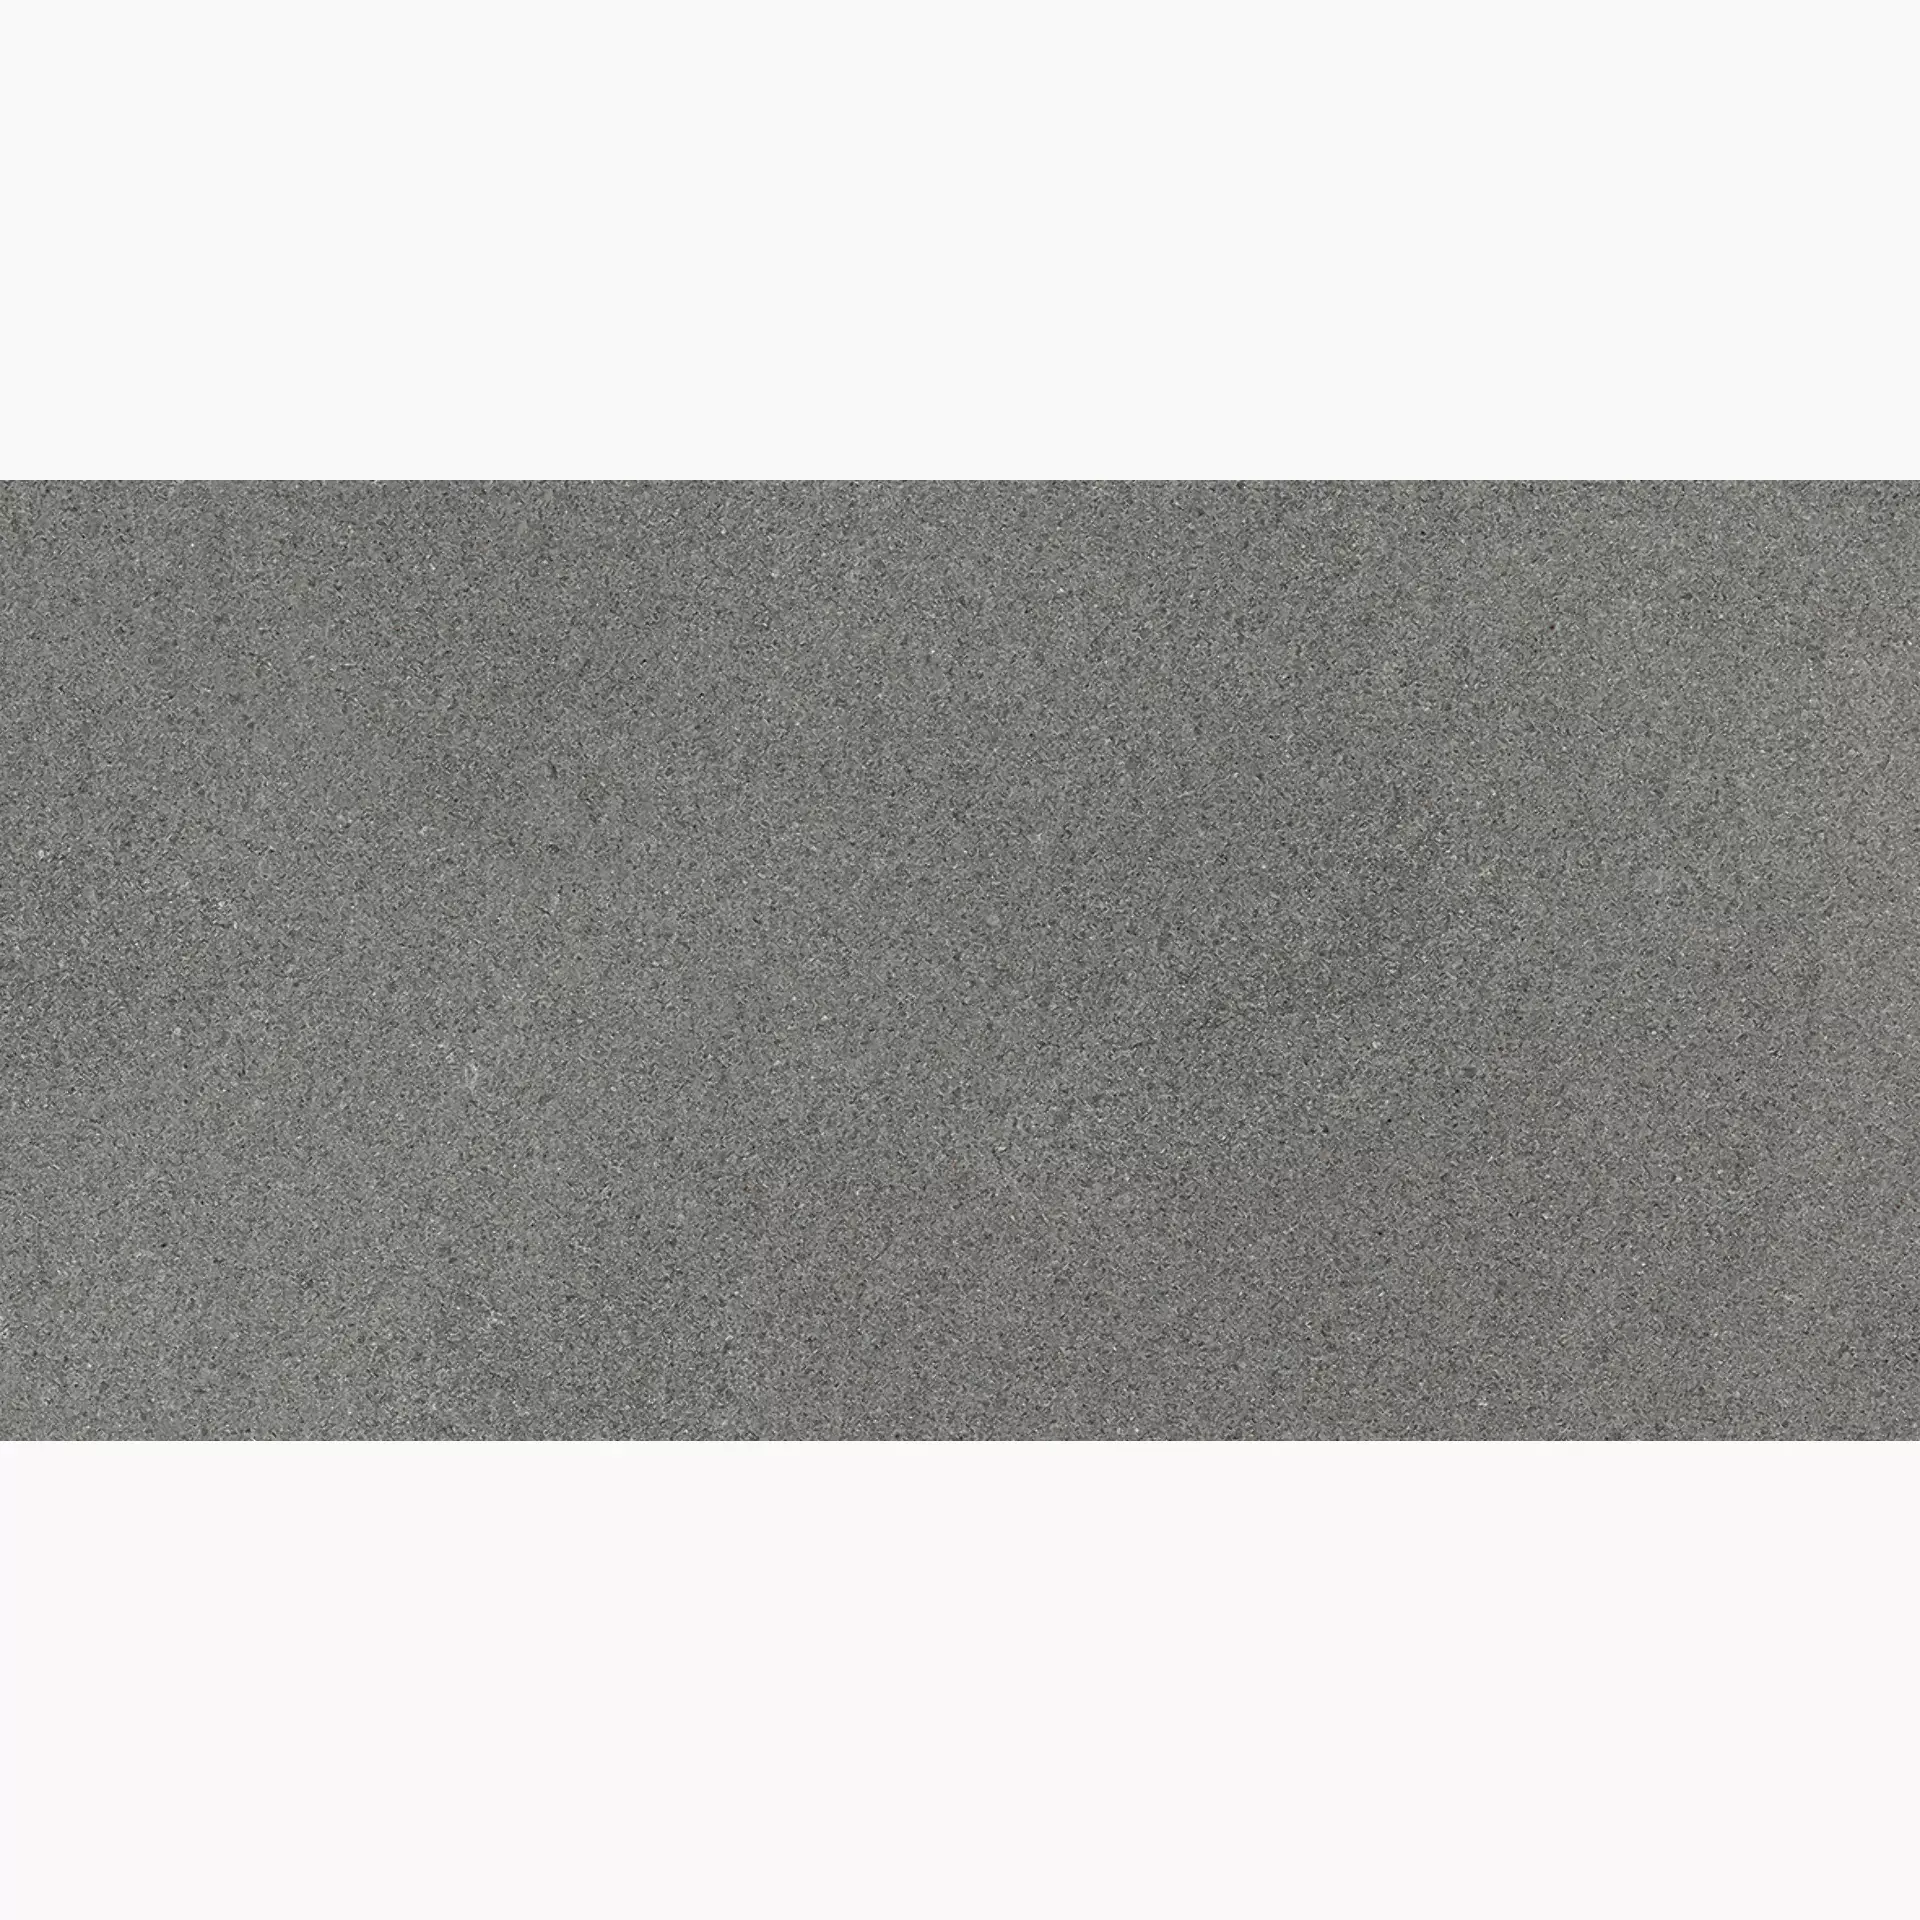 Florim Airtech New York Light Grey Naturale – Matt 760240 30x60cm rectified 9mm